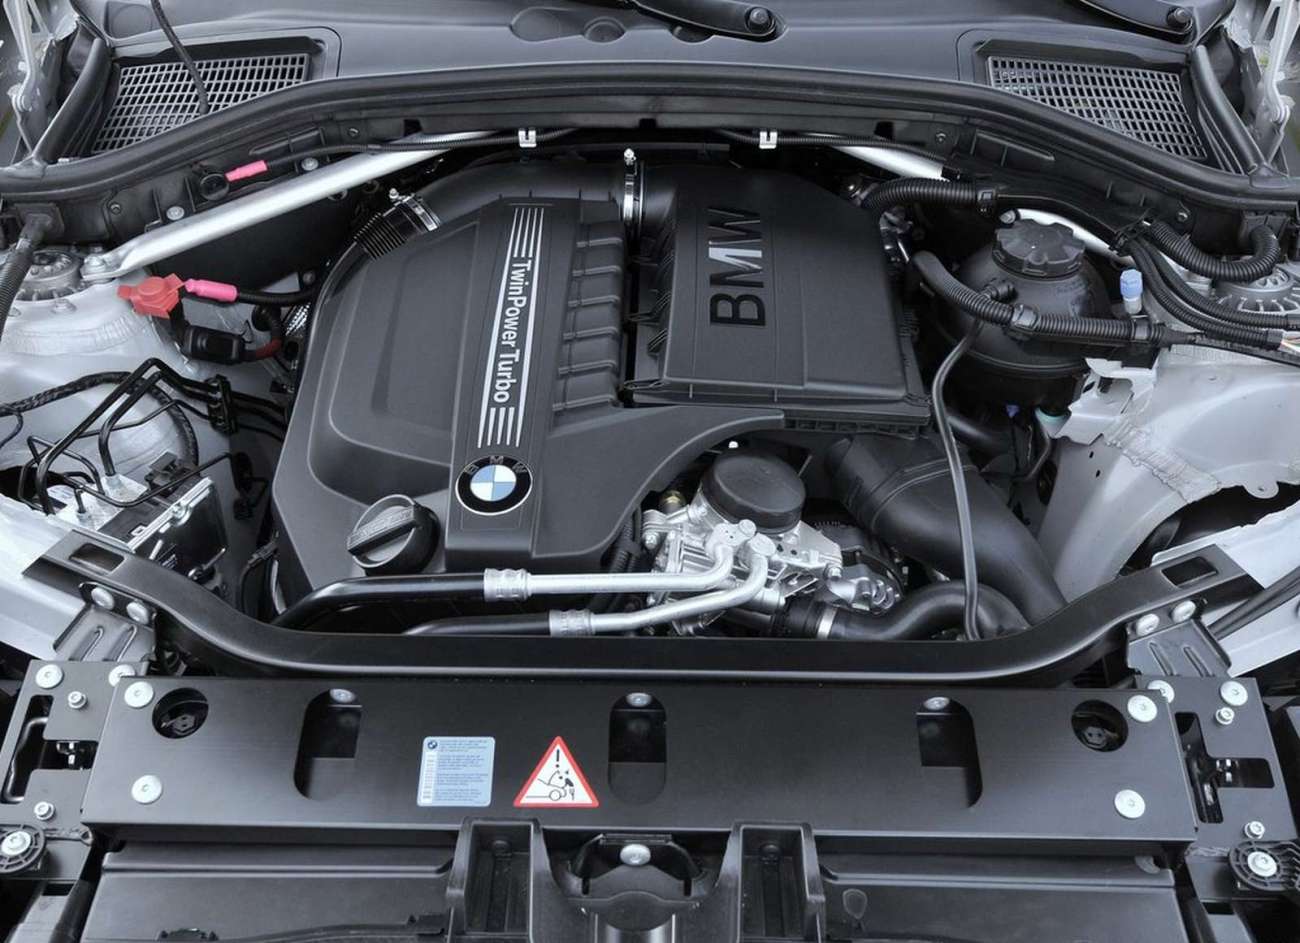 BMW X3 engine